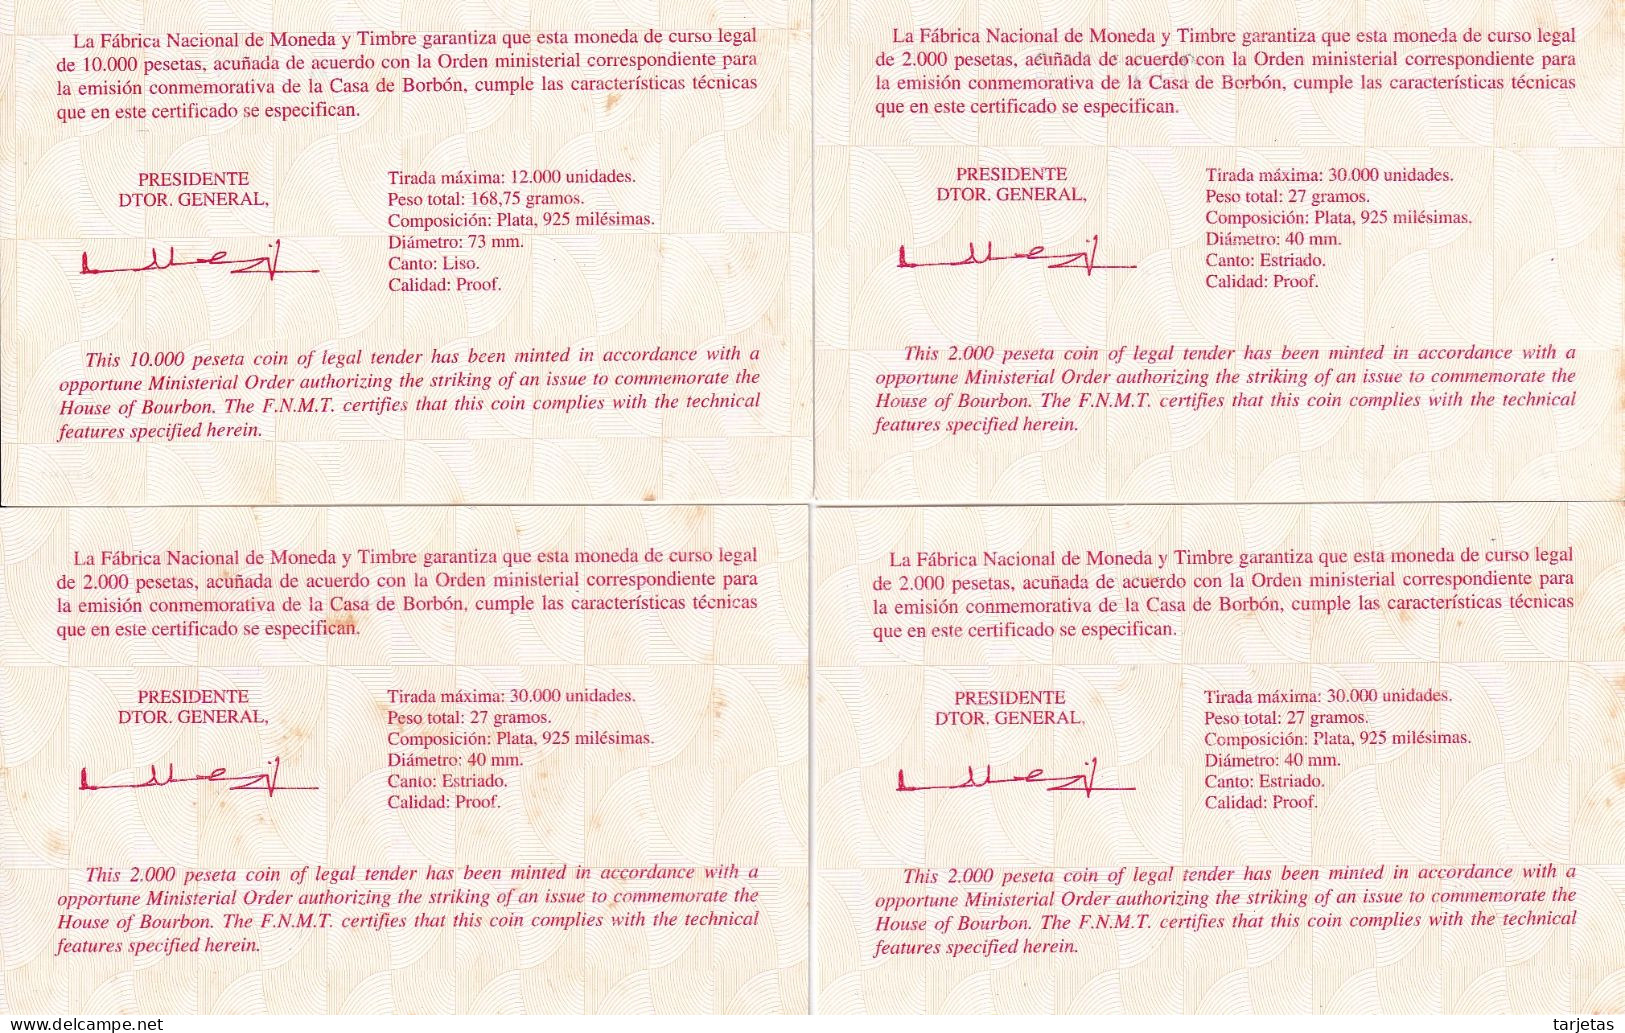 COLECCION DE 4 MONEDAS DE PLATA CASA DE BORBON 1998 ESTUCHE DE MADERA CERTIFICADO DE AUTENTICIDAD (COIN) SILVER-ARGENT - Ongebruikte Sets & Proefsets